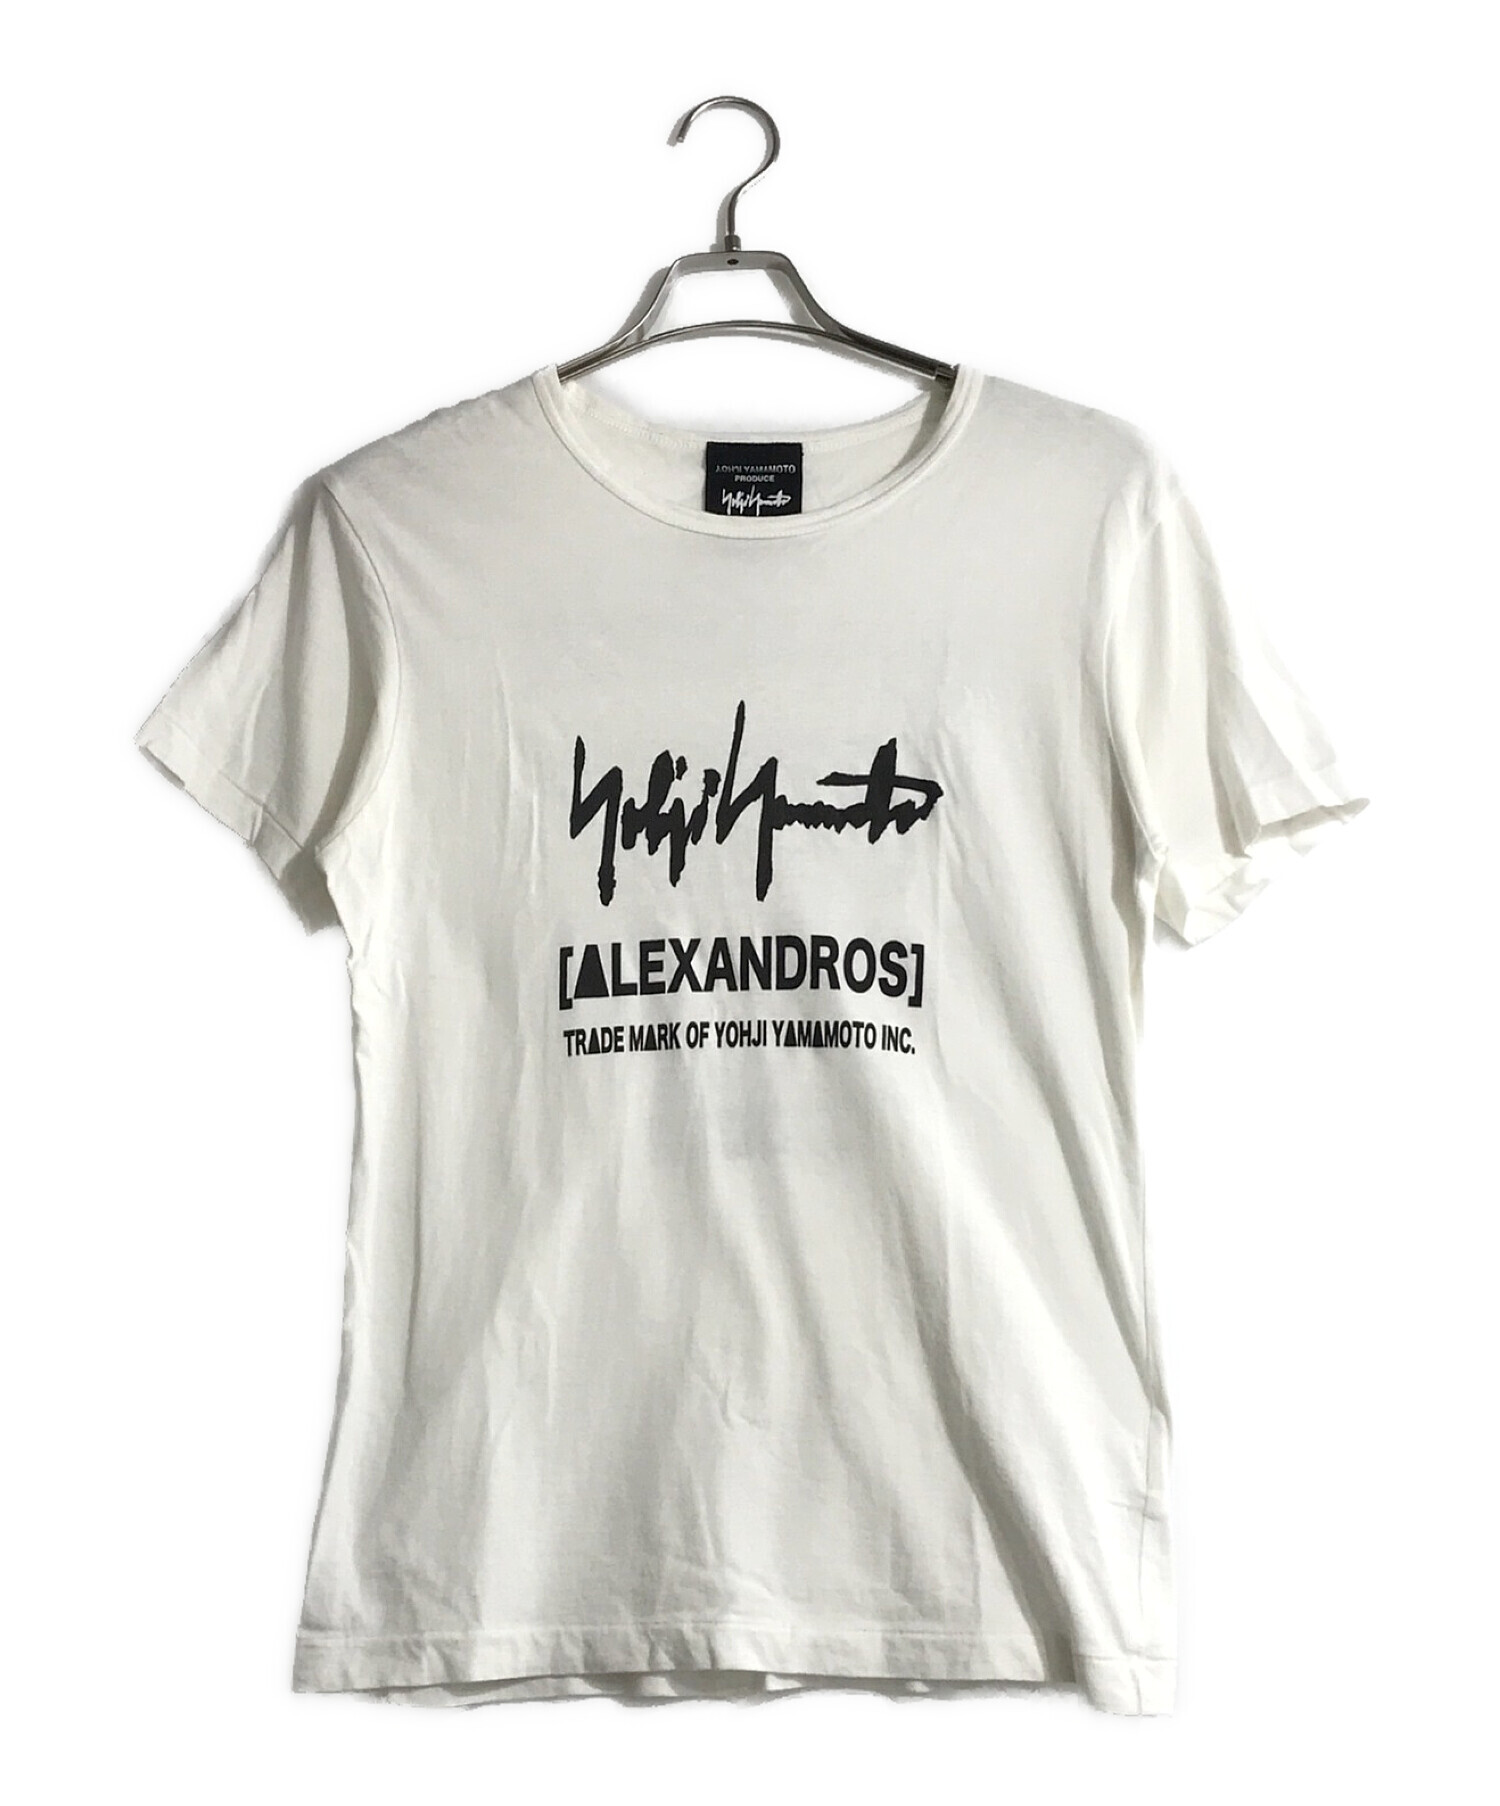 Yohji Yamamoto pour homme (ヨウジヤマモトプールオム) プリントTシャツ ホワイト サイズ:1